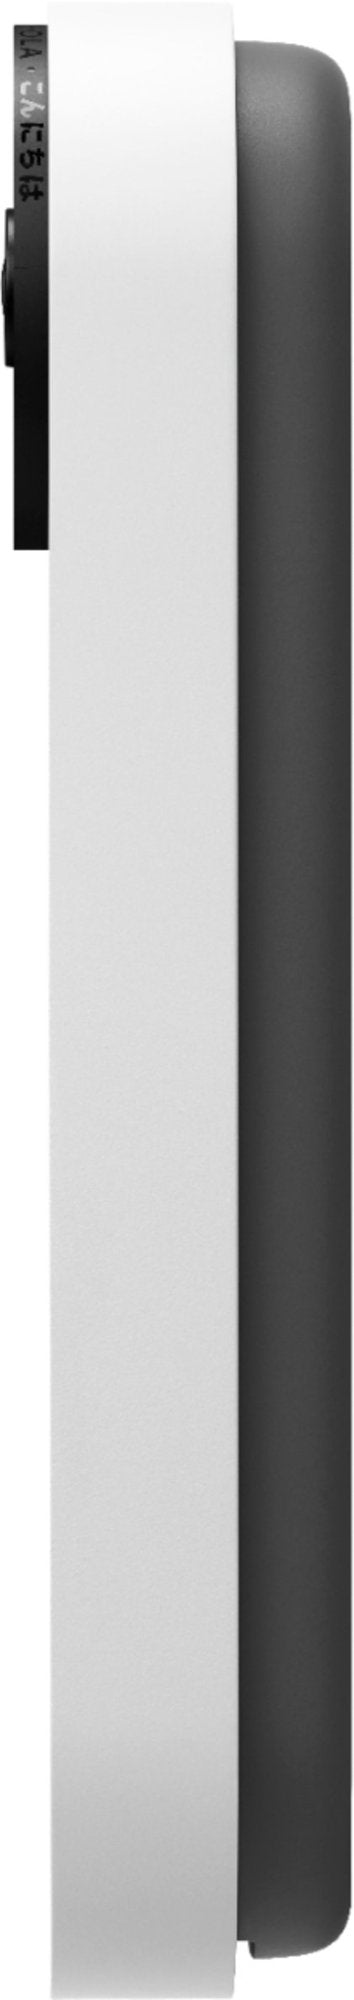 Google Nest Doorbell (Battery) Wireless Doorbell Camera - Video Doorbell - Snow (Refurbished)